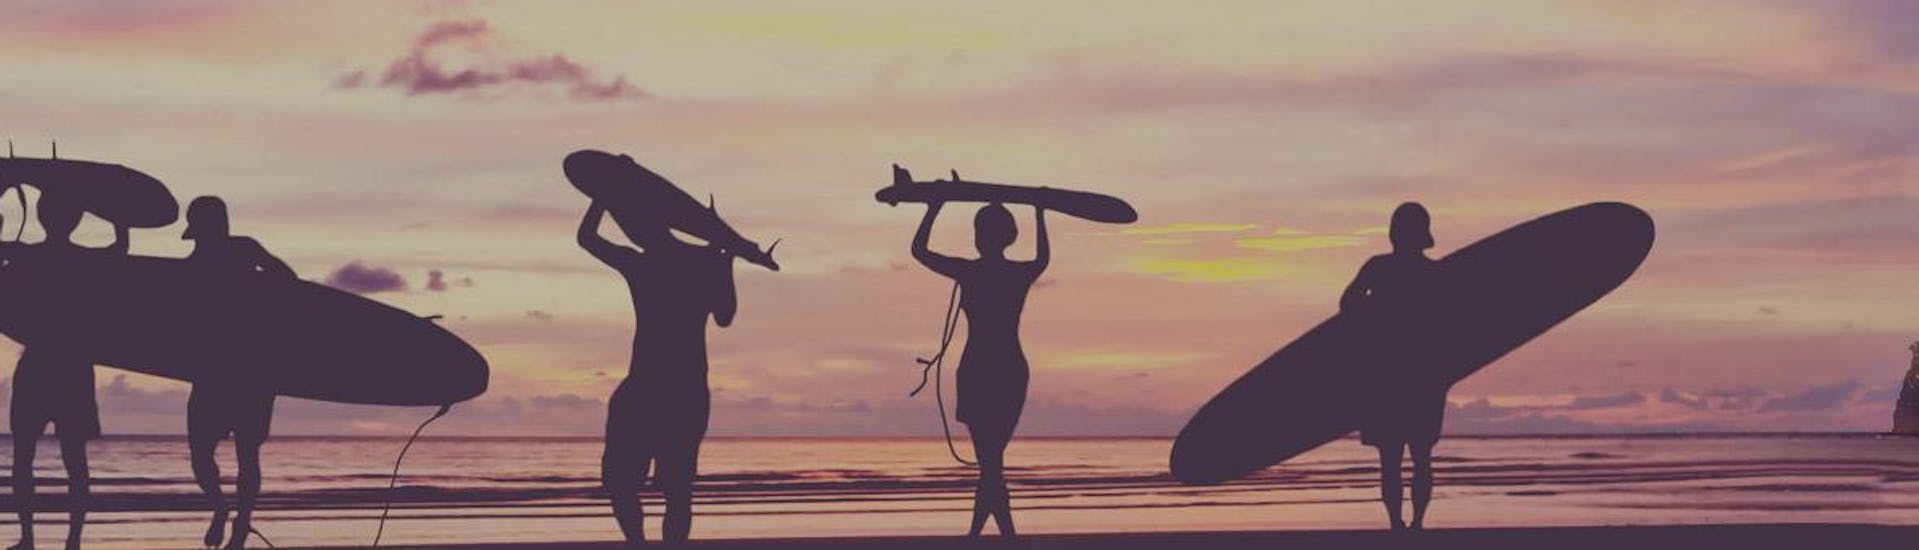 Des surfeurs marchent sur la plage au coucher du soleil avec leur planche de surf sur la tête ou sous le bras à la fin de leur cours de surf sur la plage d'Hendaye pendant la haute saison avec l'École de surf Hendaia.